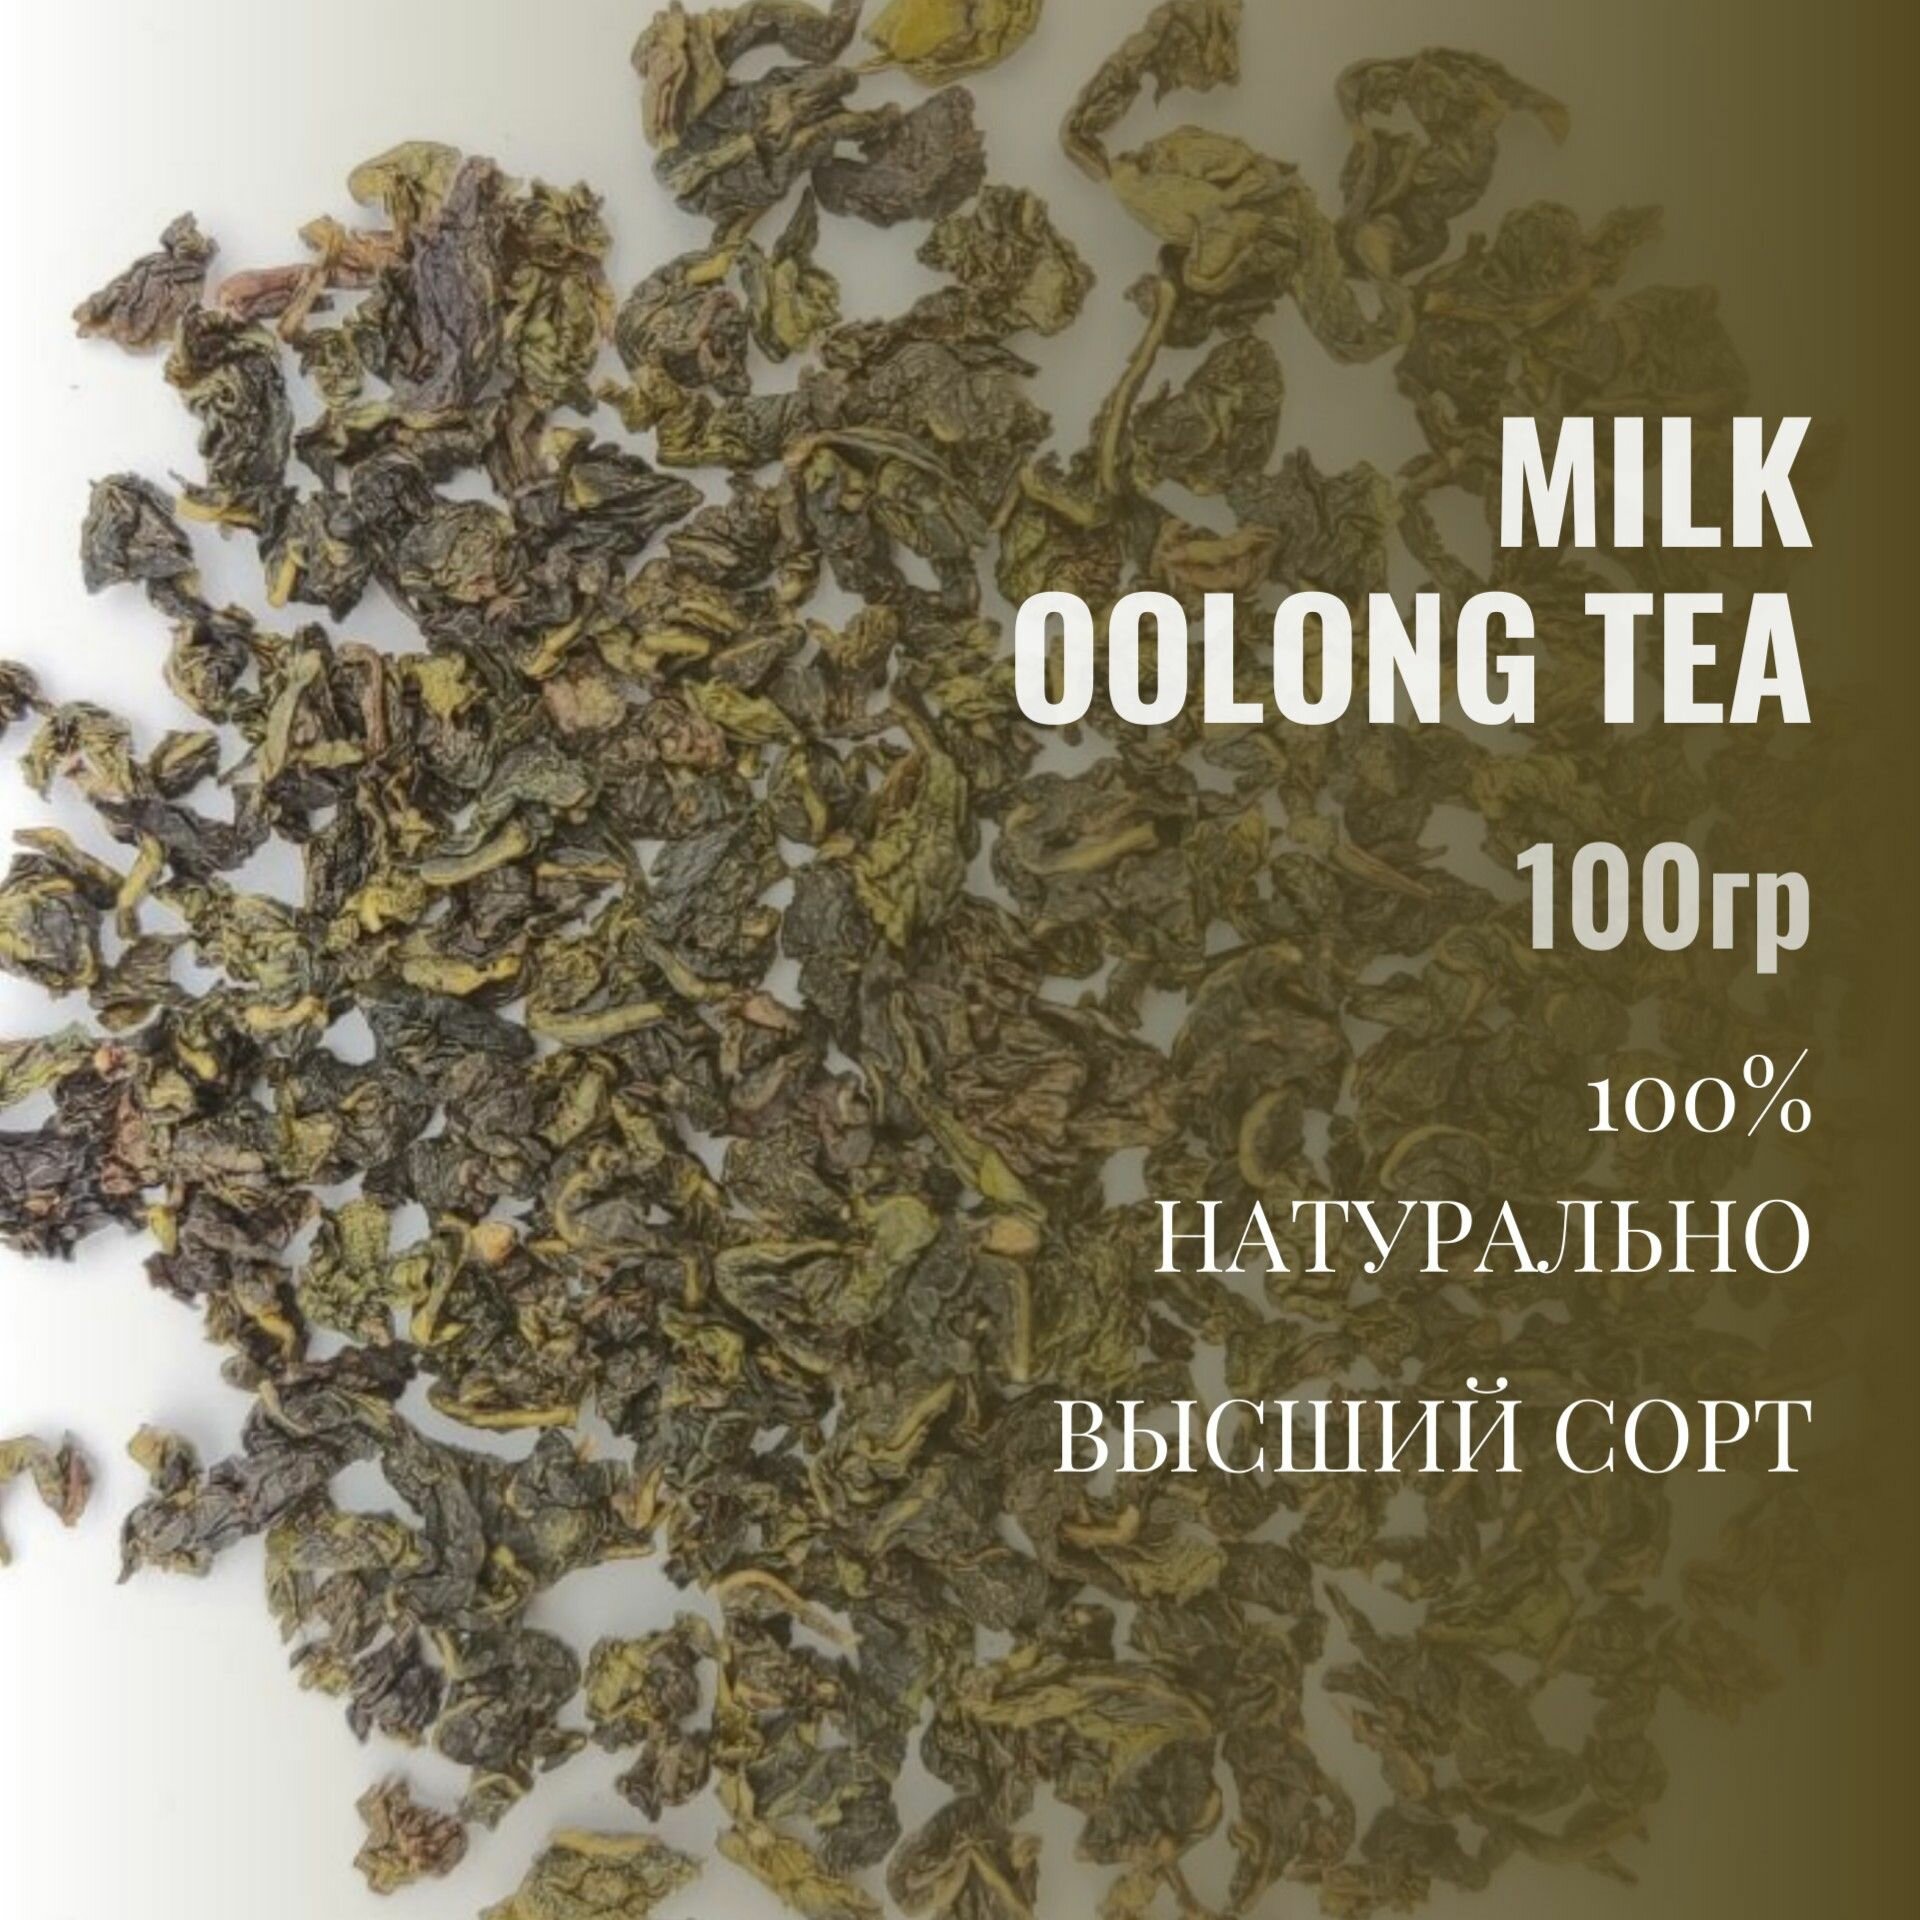 Китайский чай зеленый листовой Молочный Улун. Най Сян Оолонг. Молочный оолонг, 100 гр